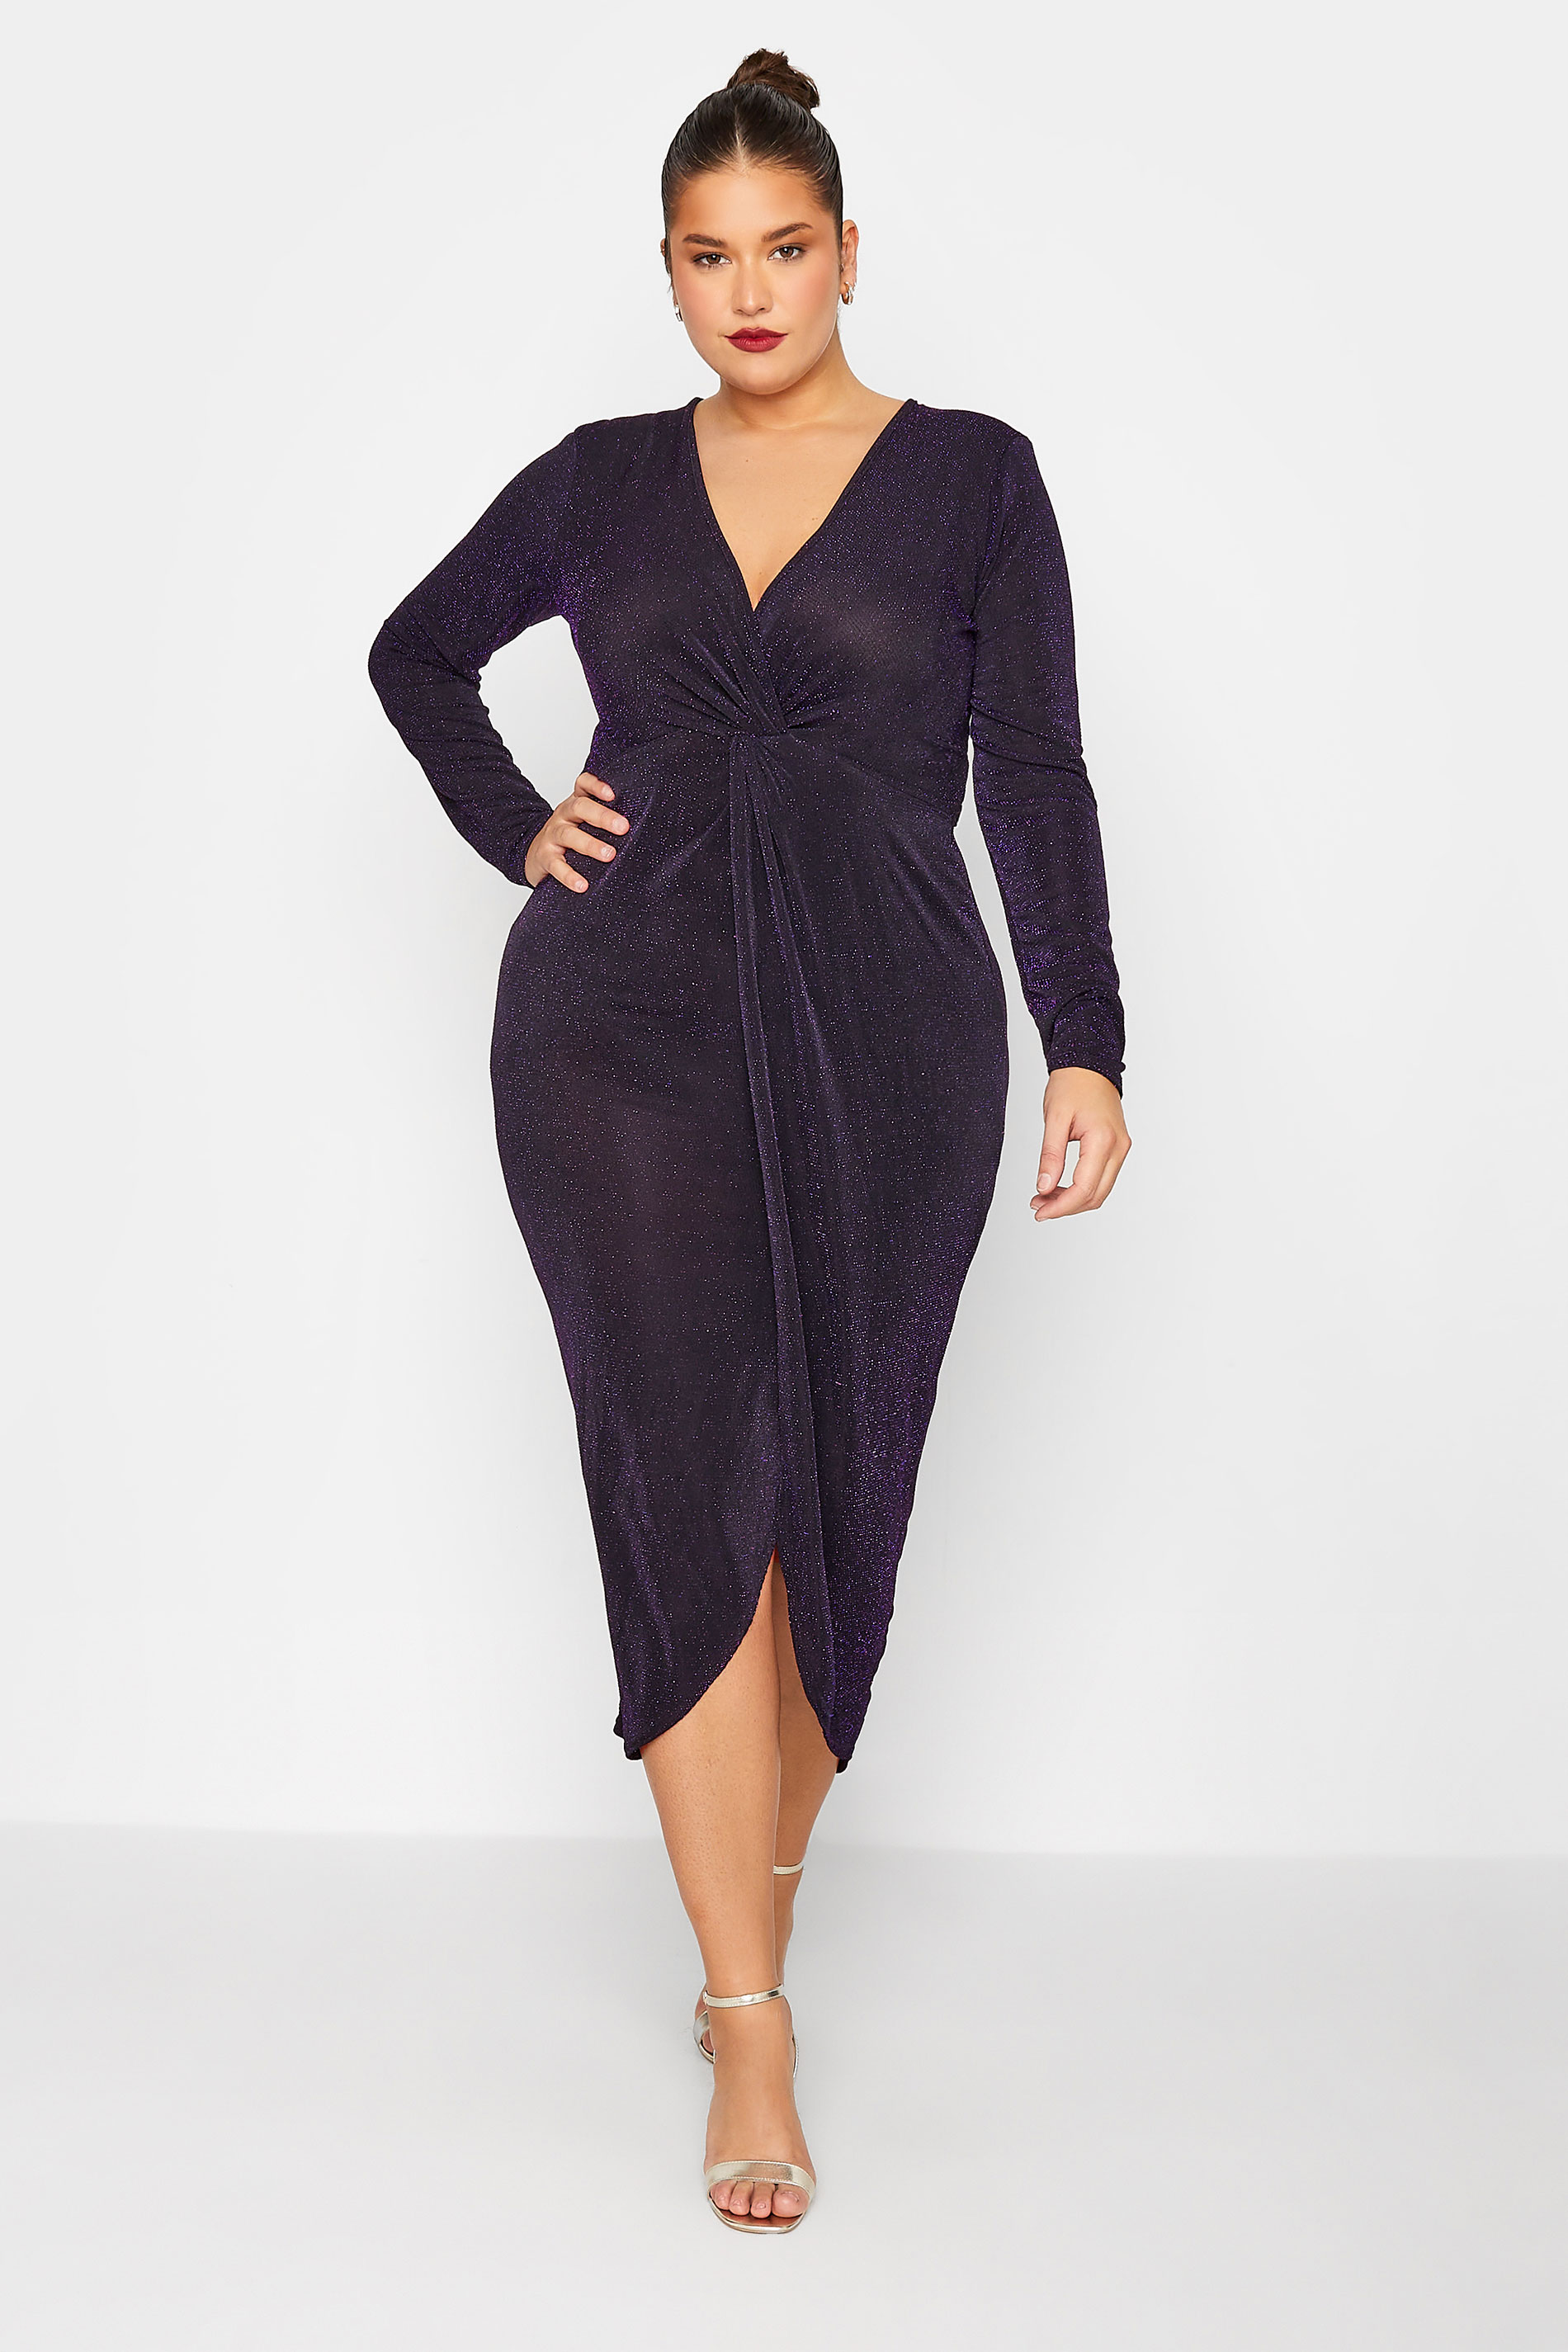 LTS Tall Women's Black & Purple Glitter Twist Wrap Midi Dress | Long Tall Sally 2